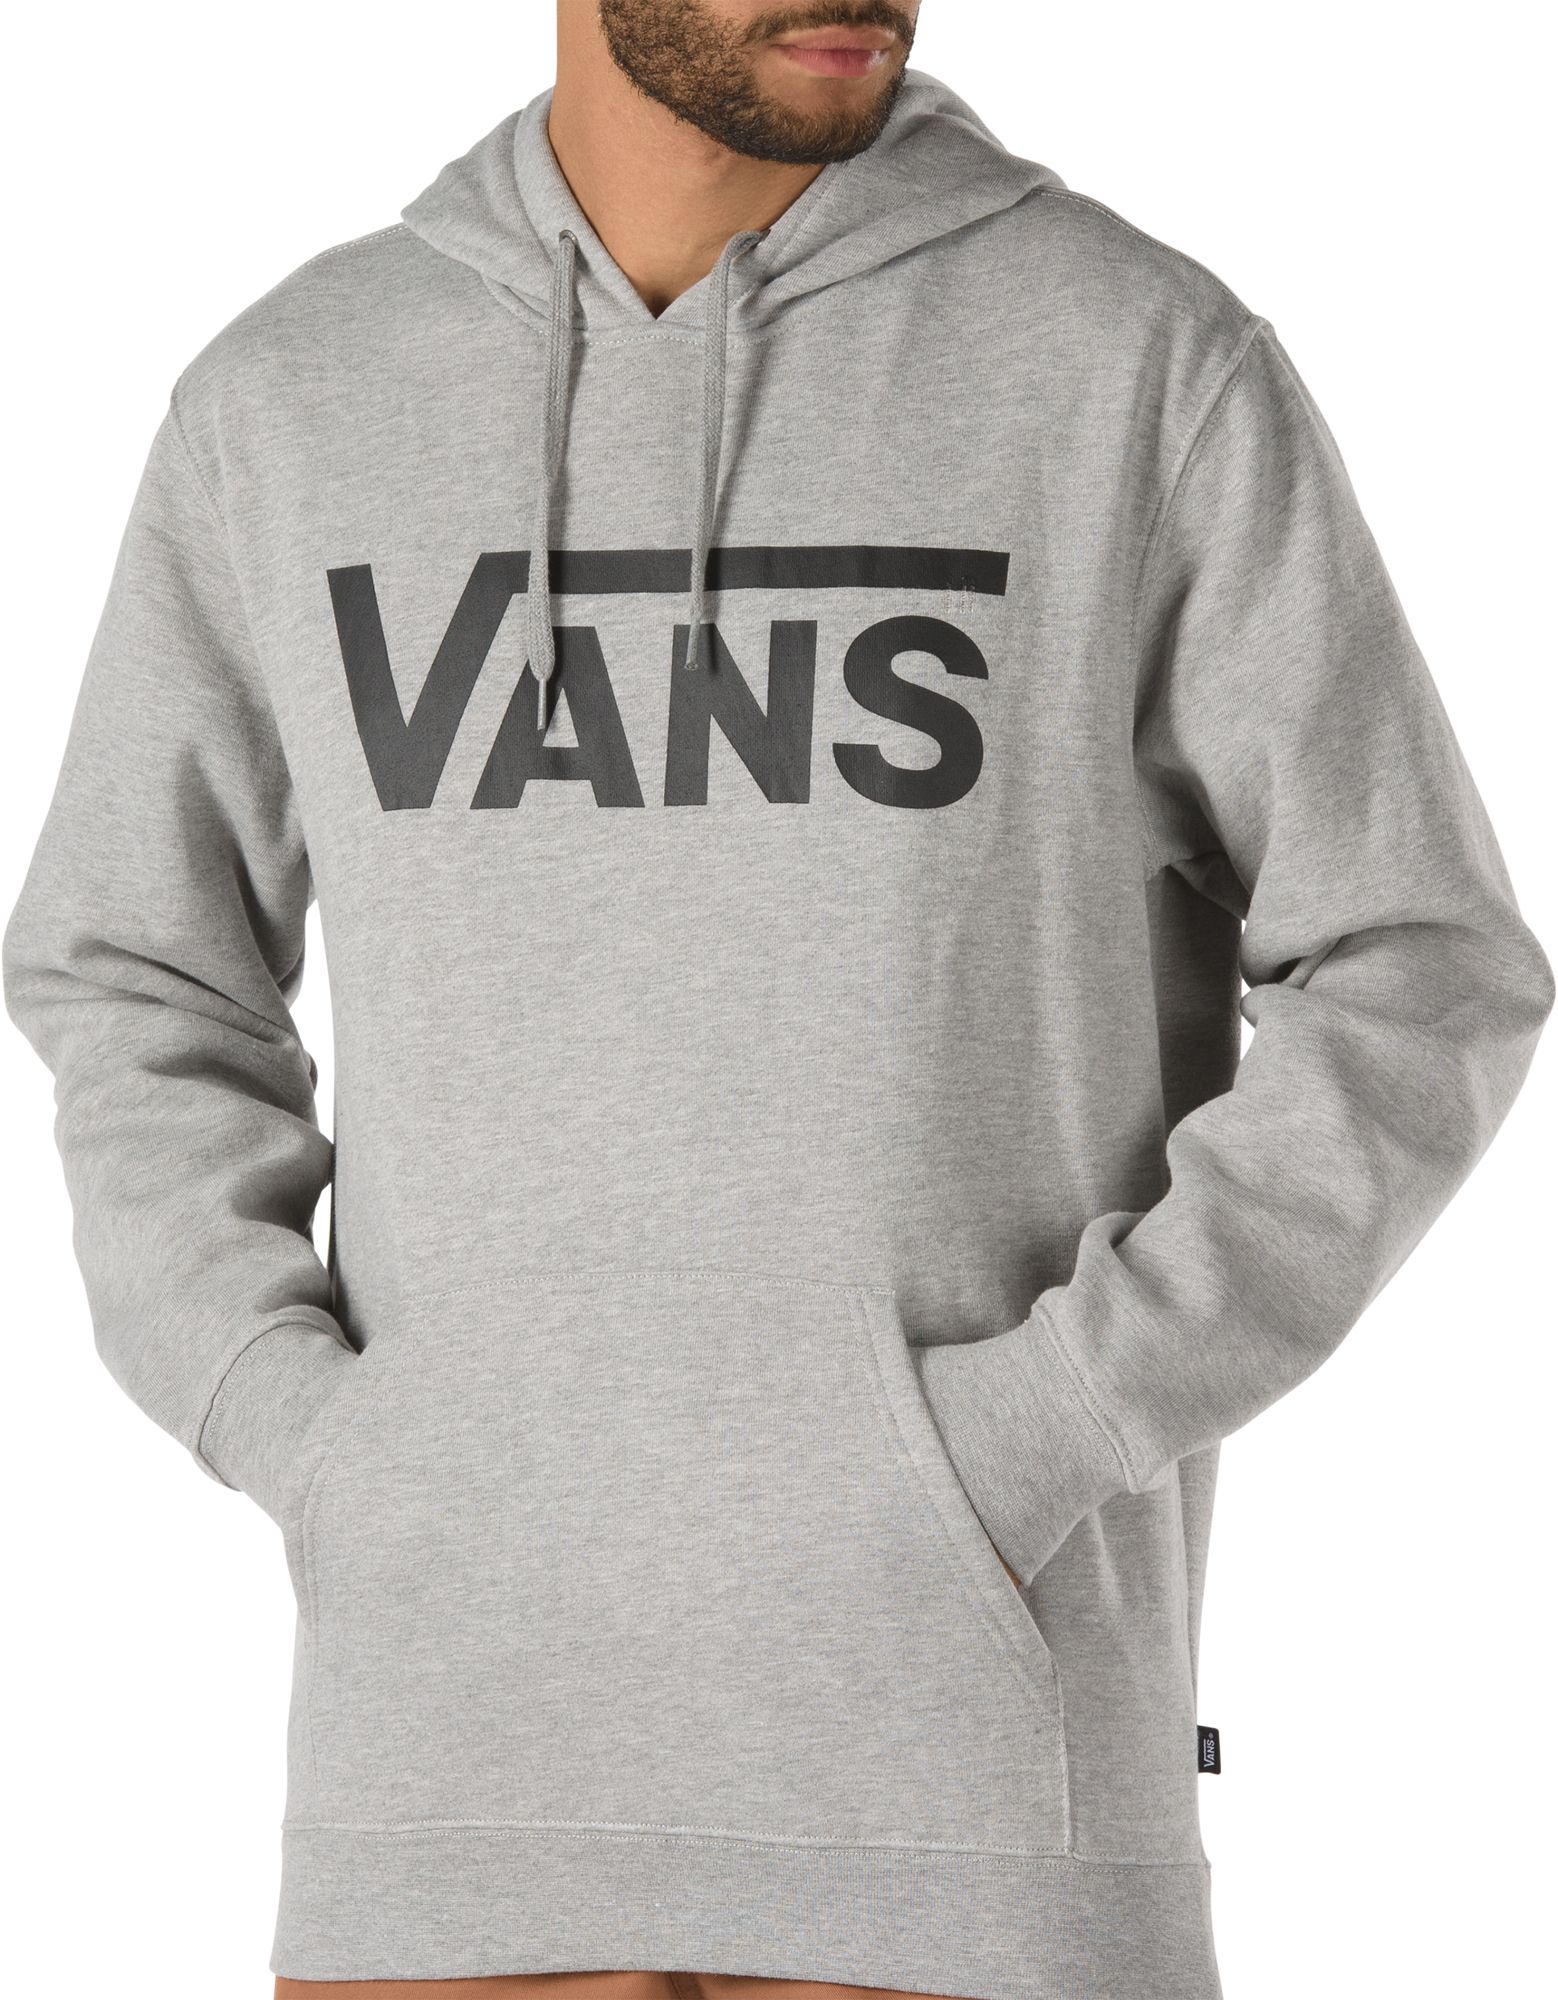 vans clearance hoodies